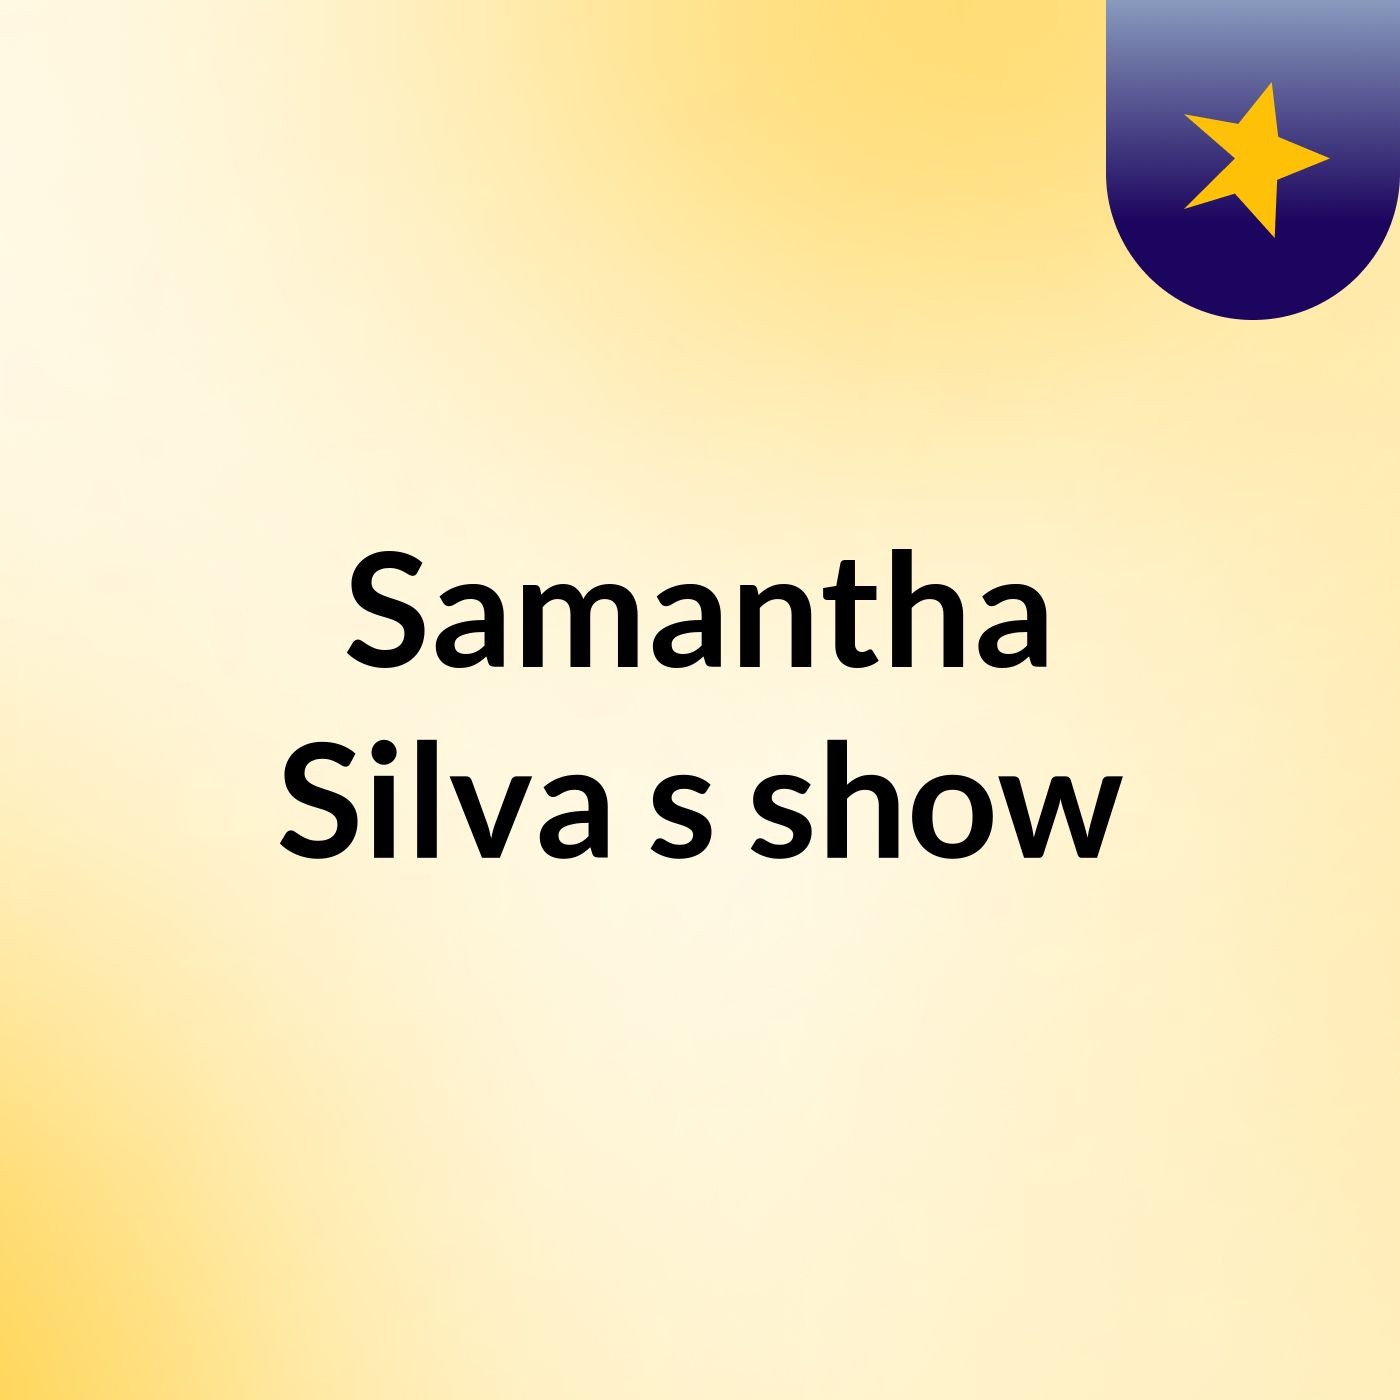 Samantha Silva's show